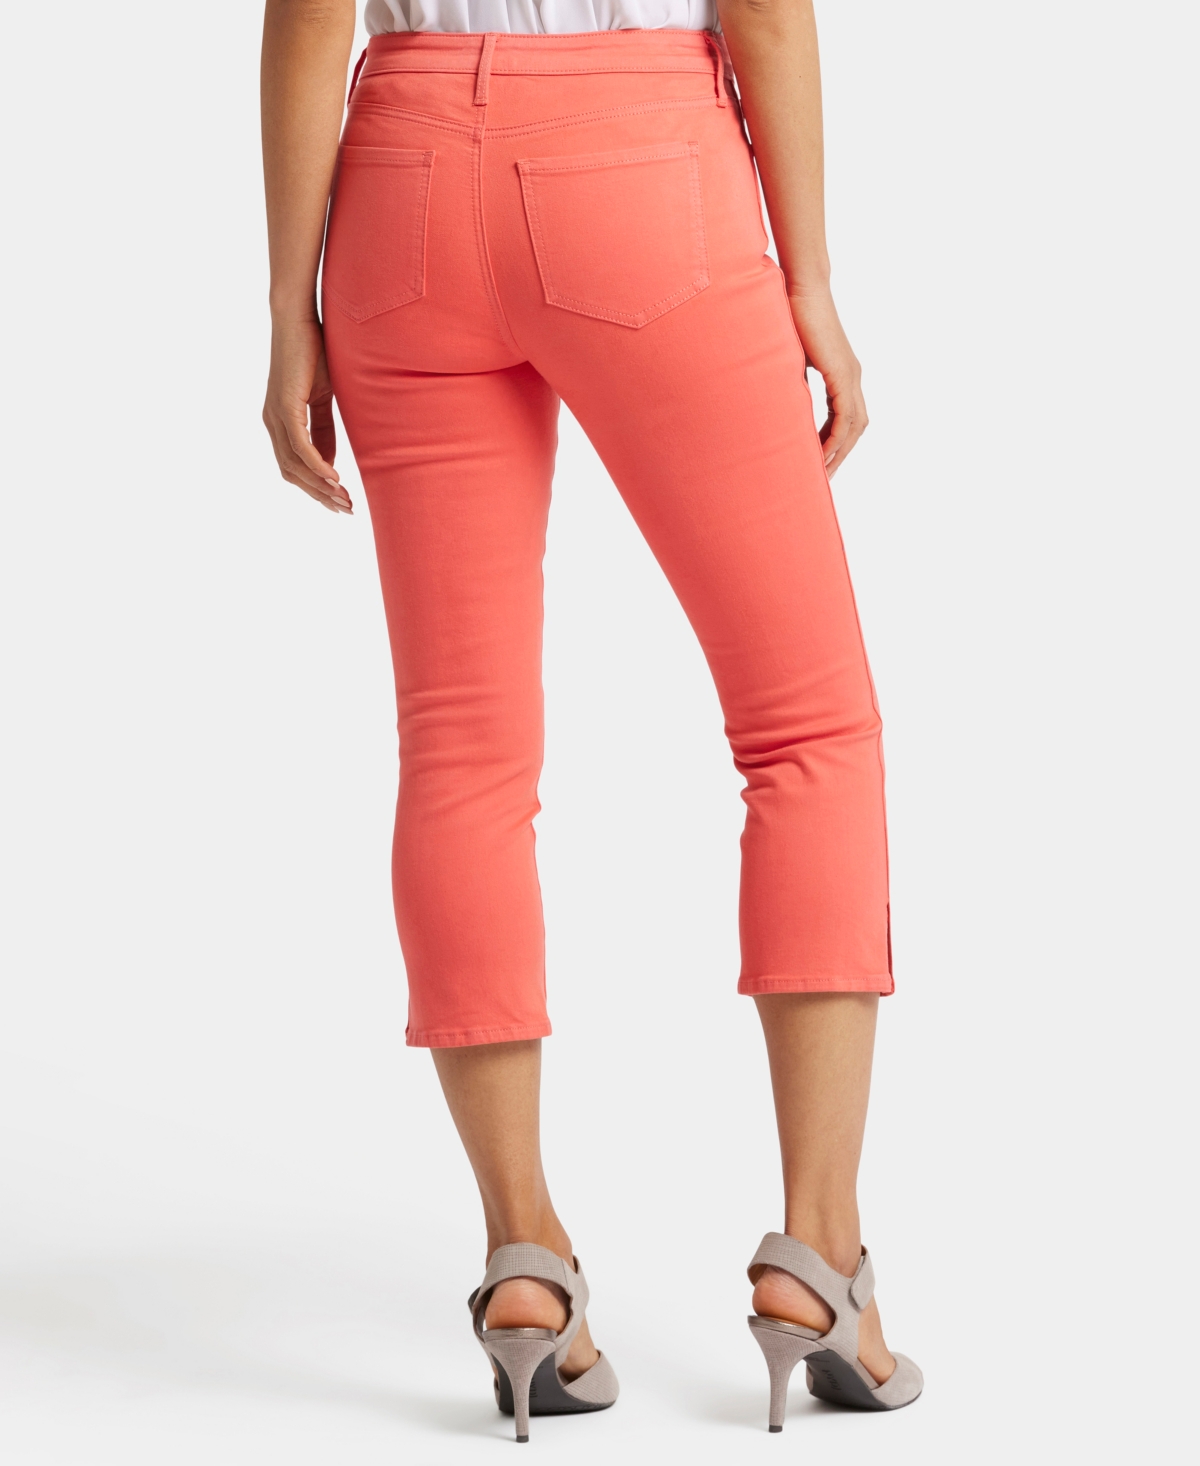 Shop Nydj Women's Chloe Capri Cropped Length Jeans In Fruit Punch